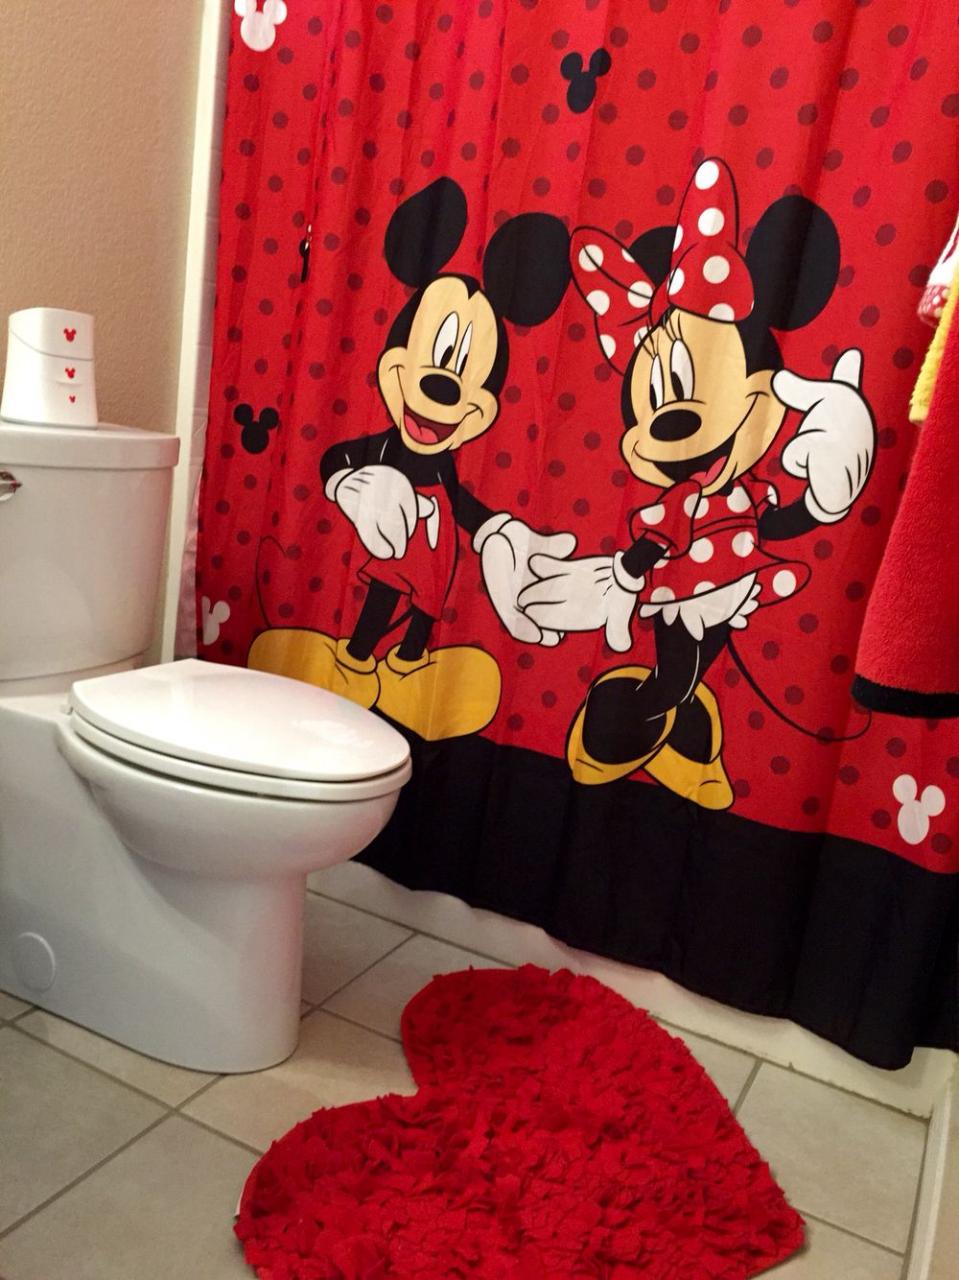 Mickey and Minnie Mouse bathroom decor Desain, Desain interior